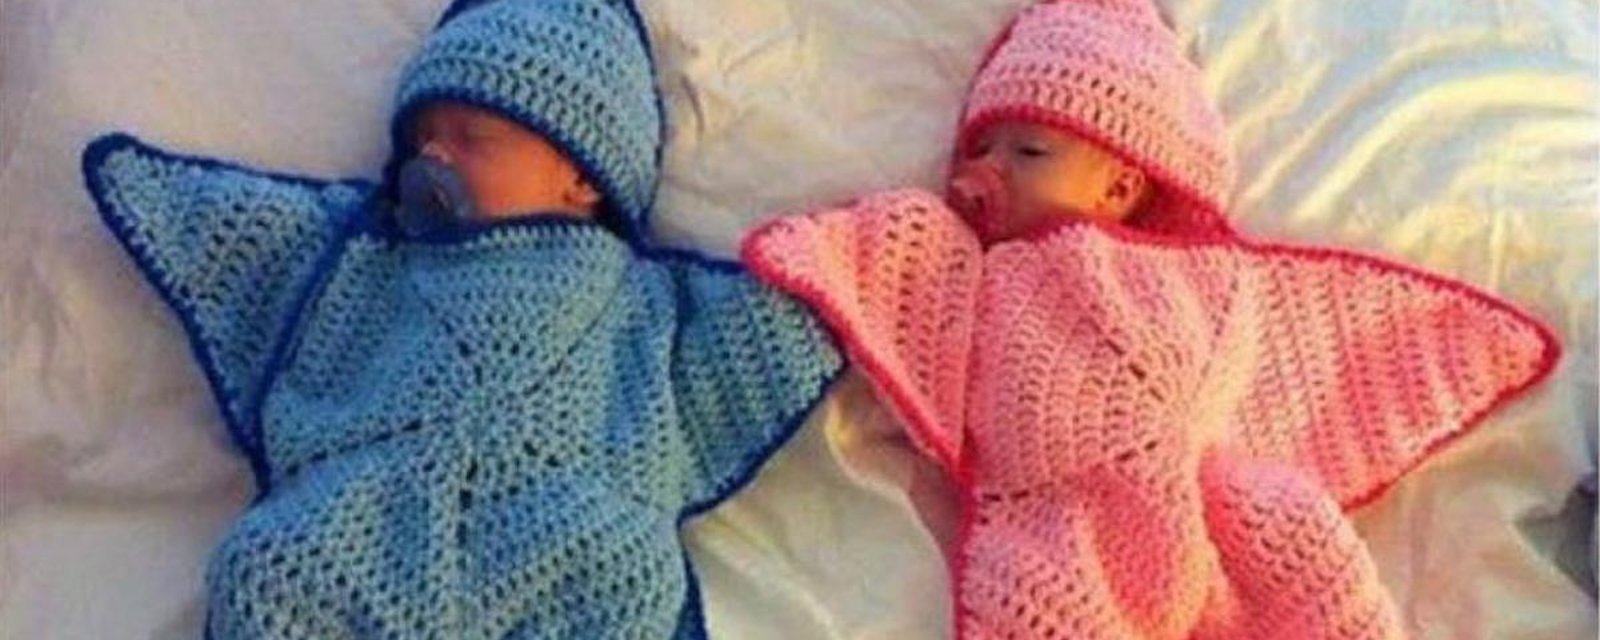 Projets tricot: 24 cocons douillets pour les petits bébés!